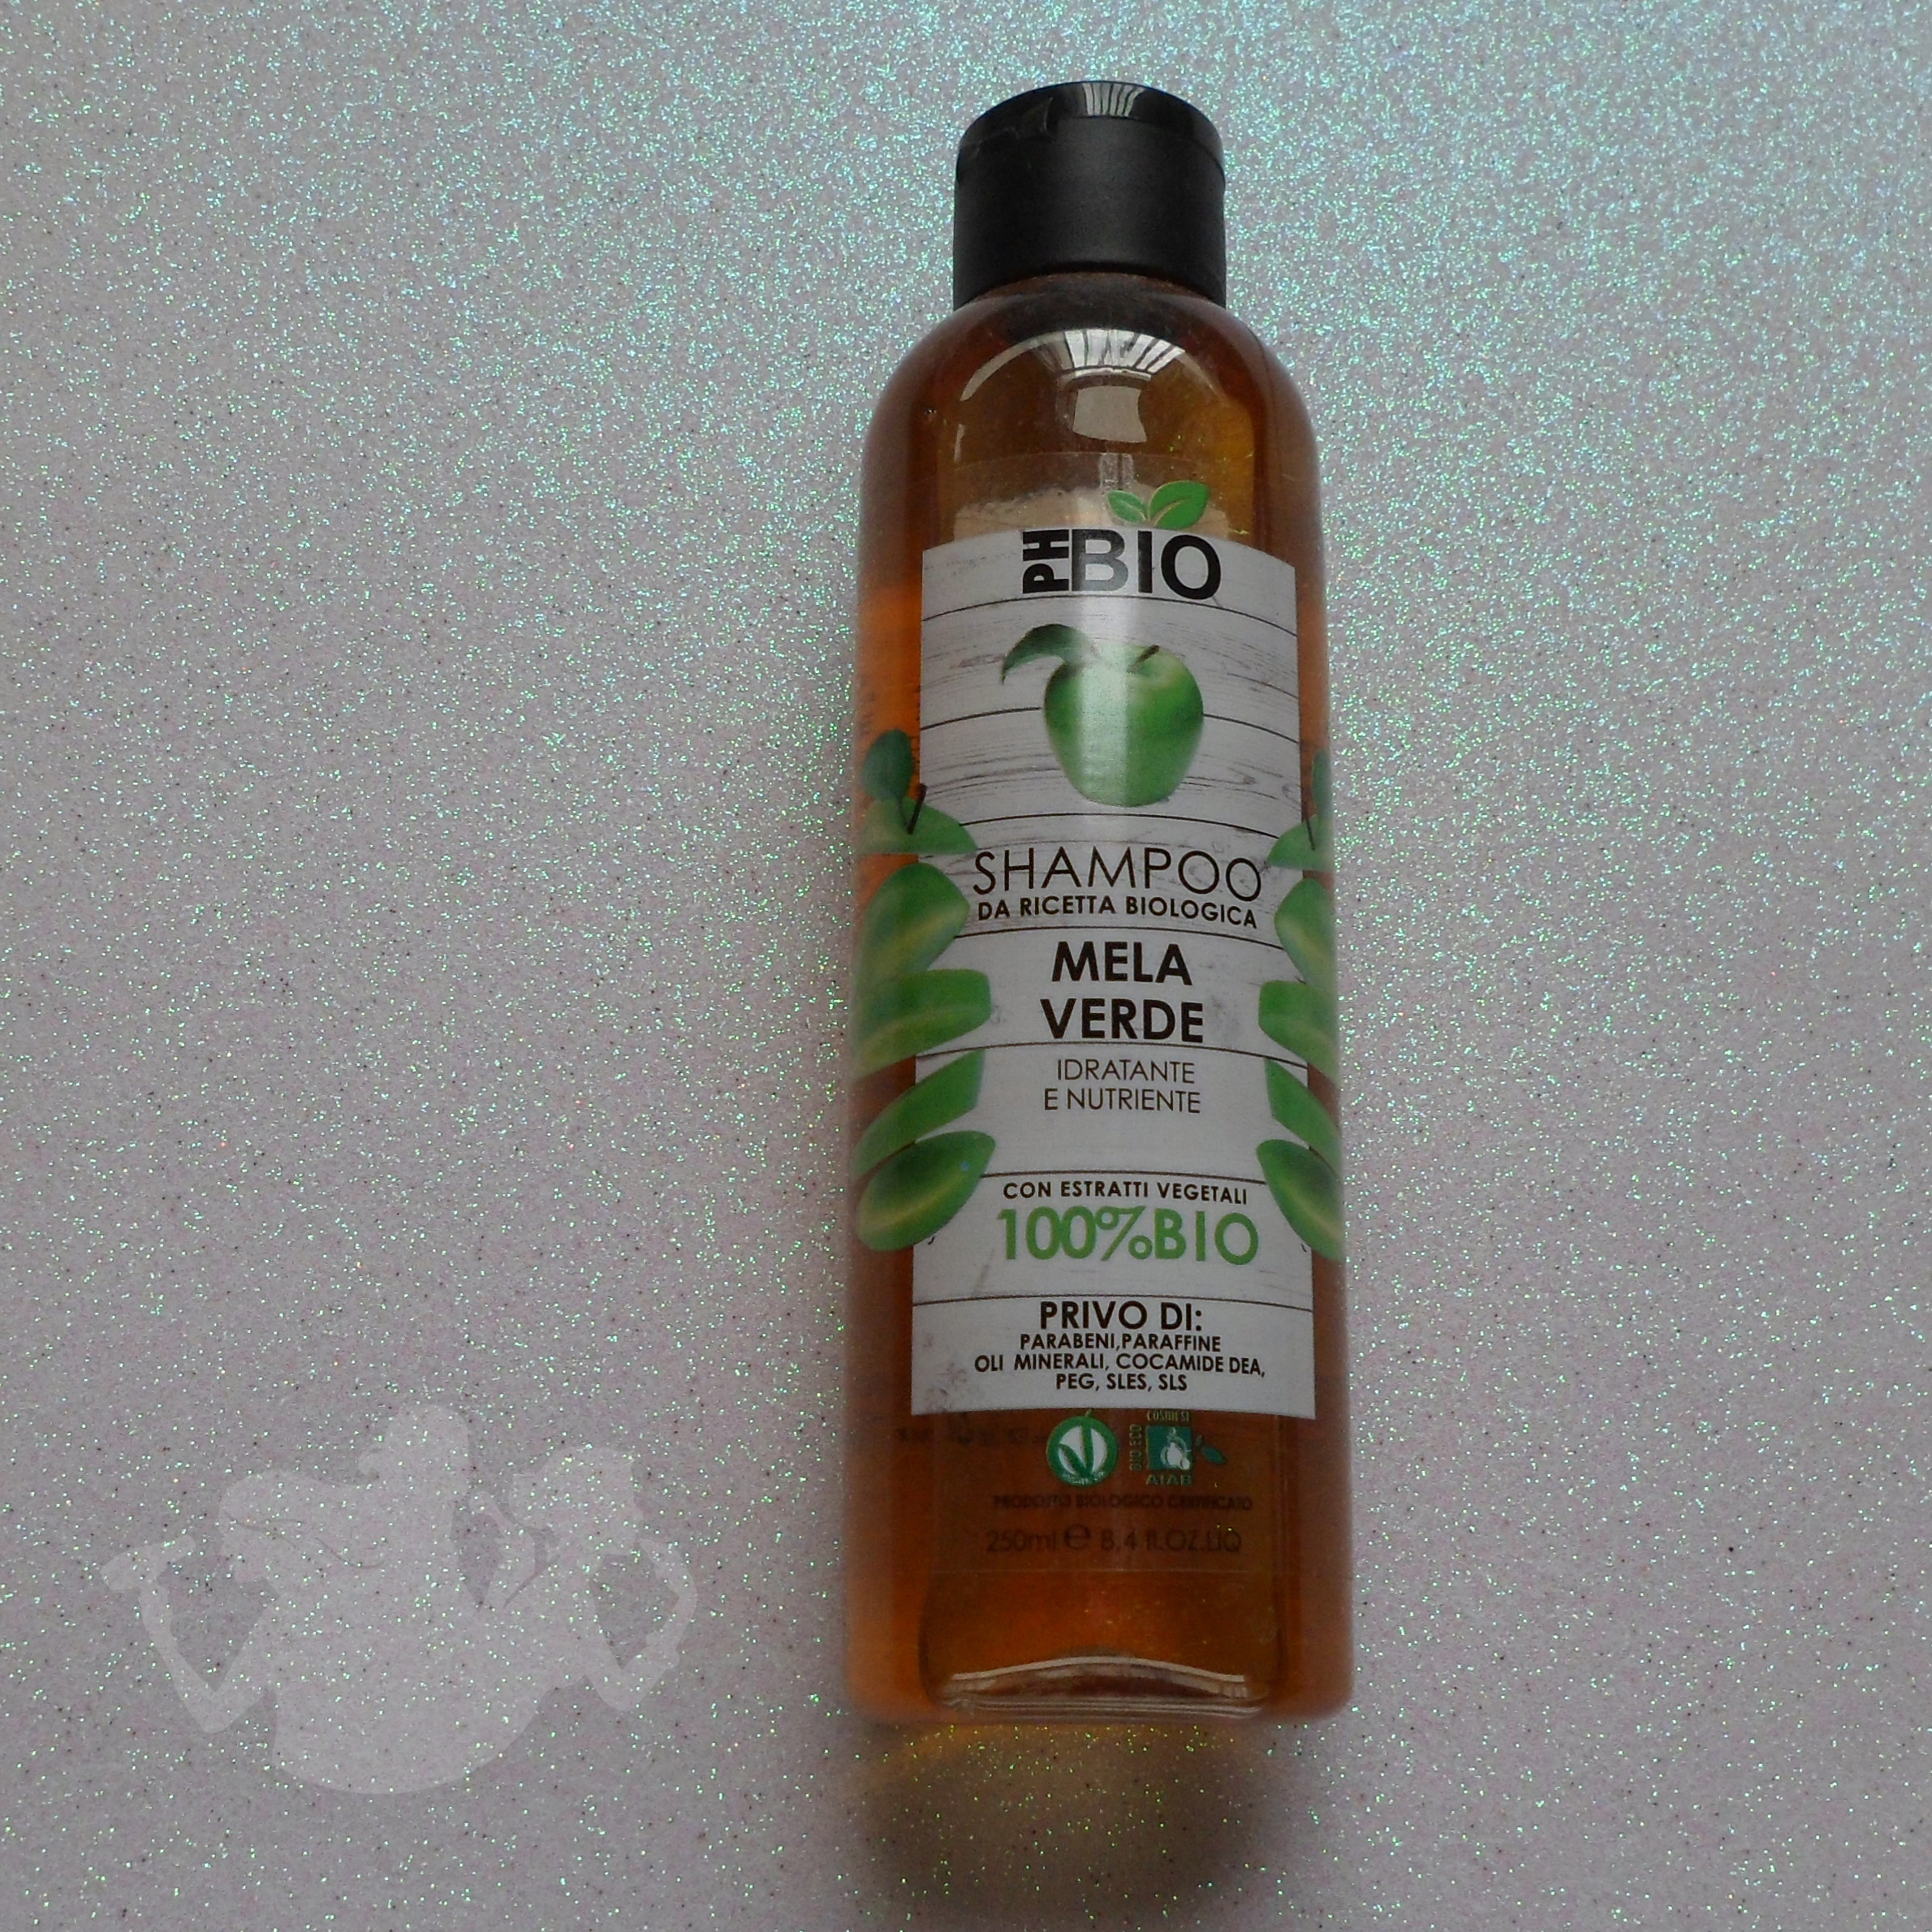 shampoo PhBio mela verde